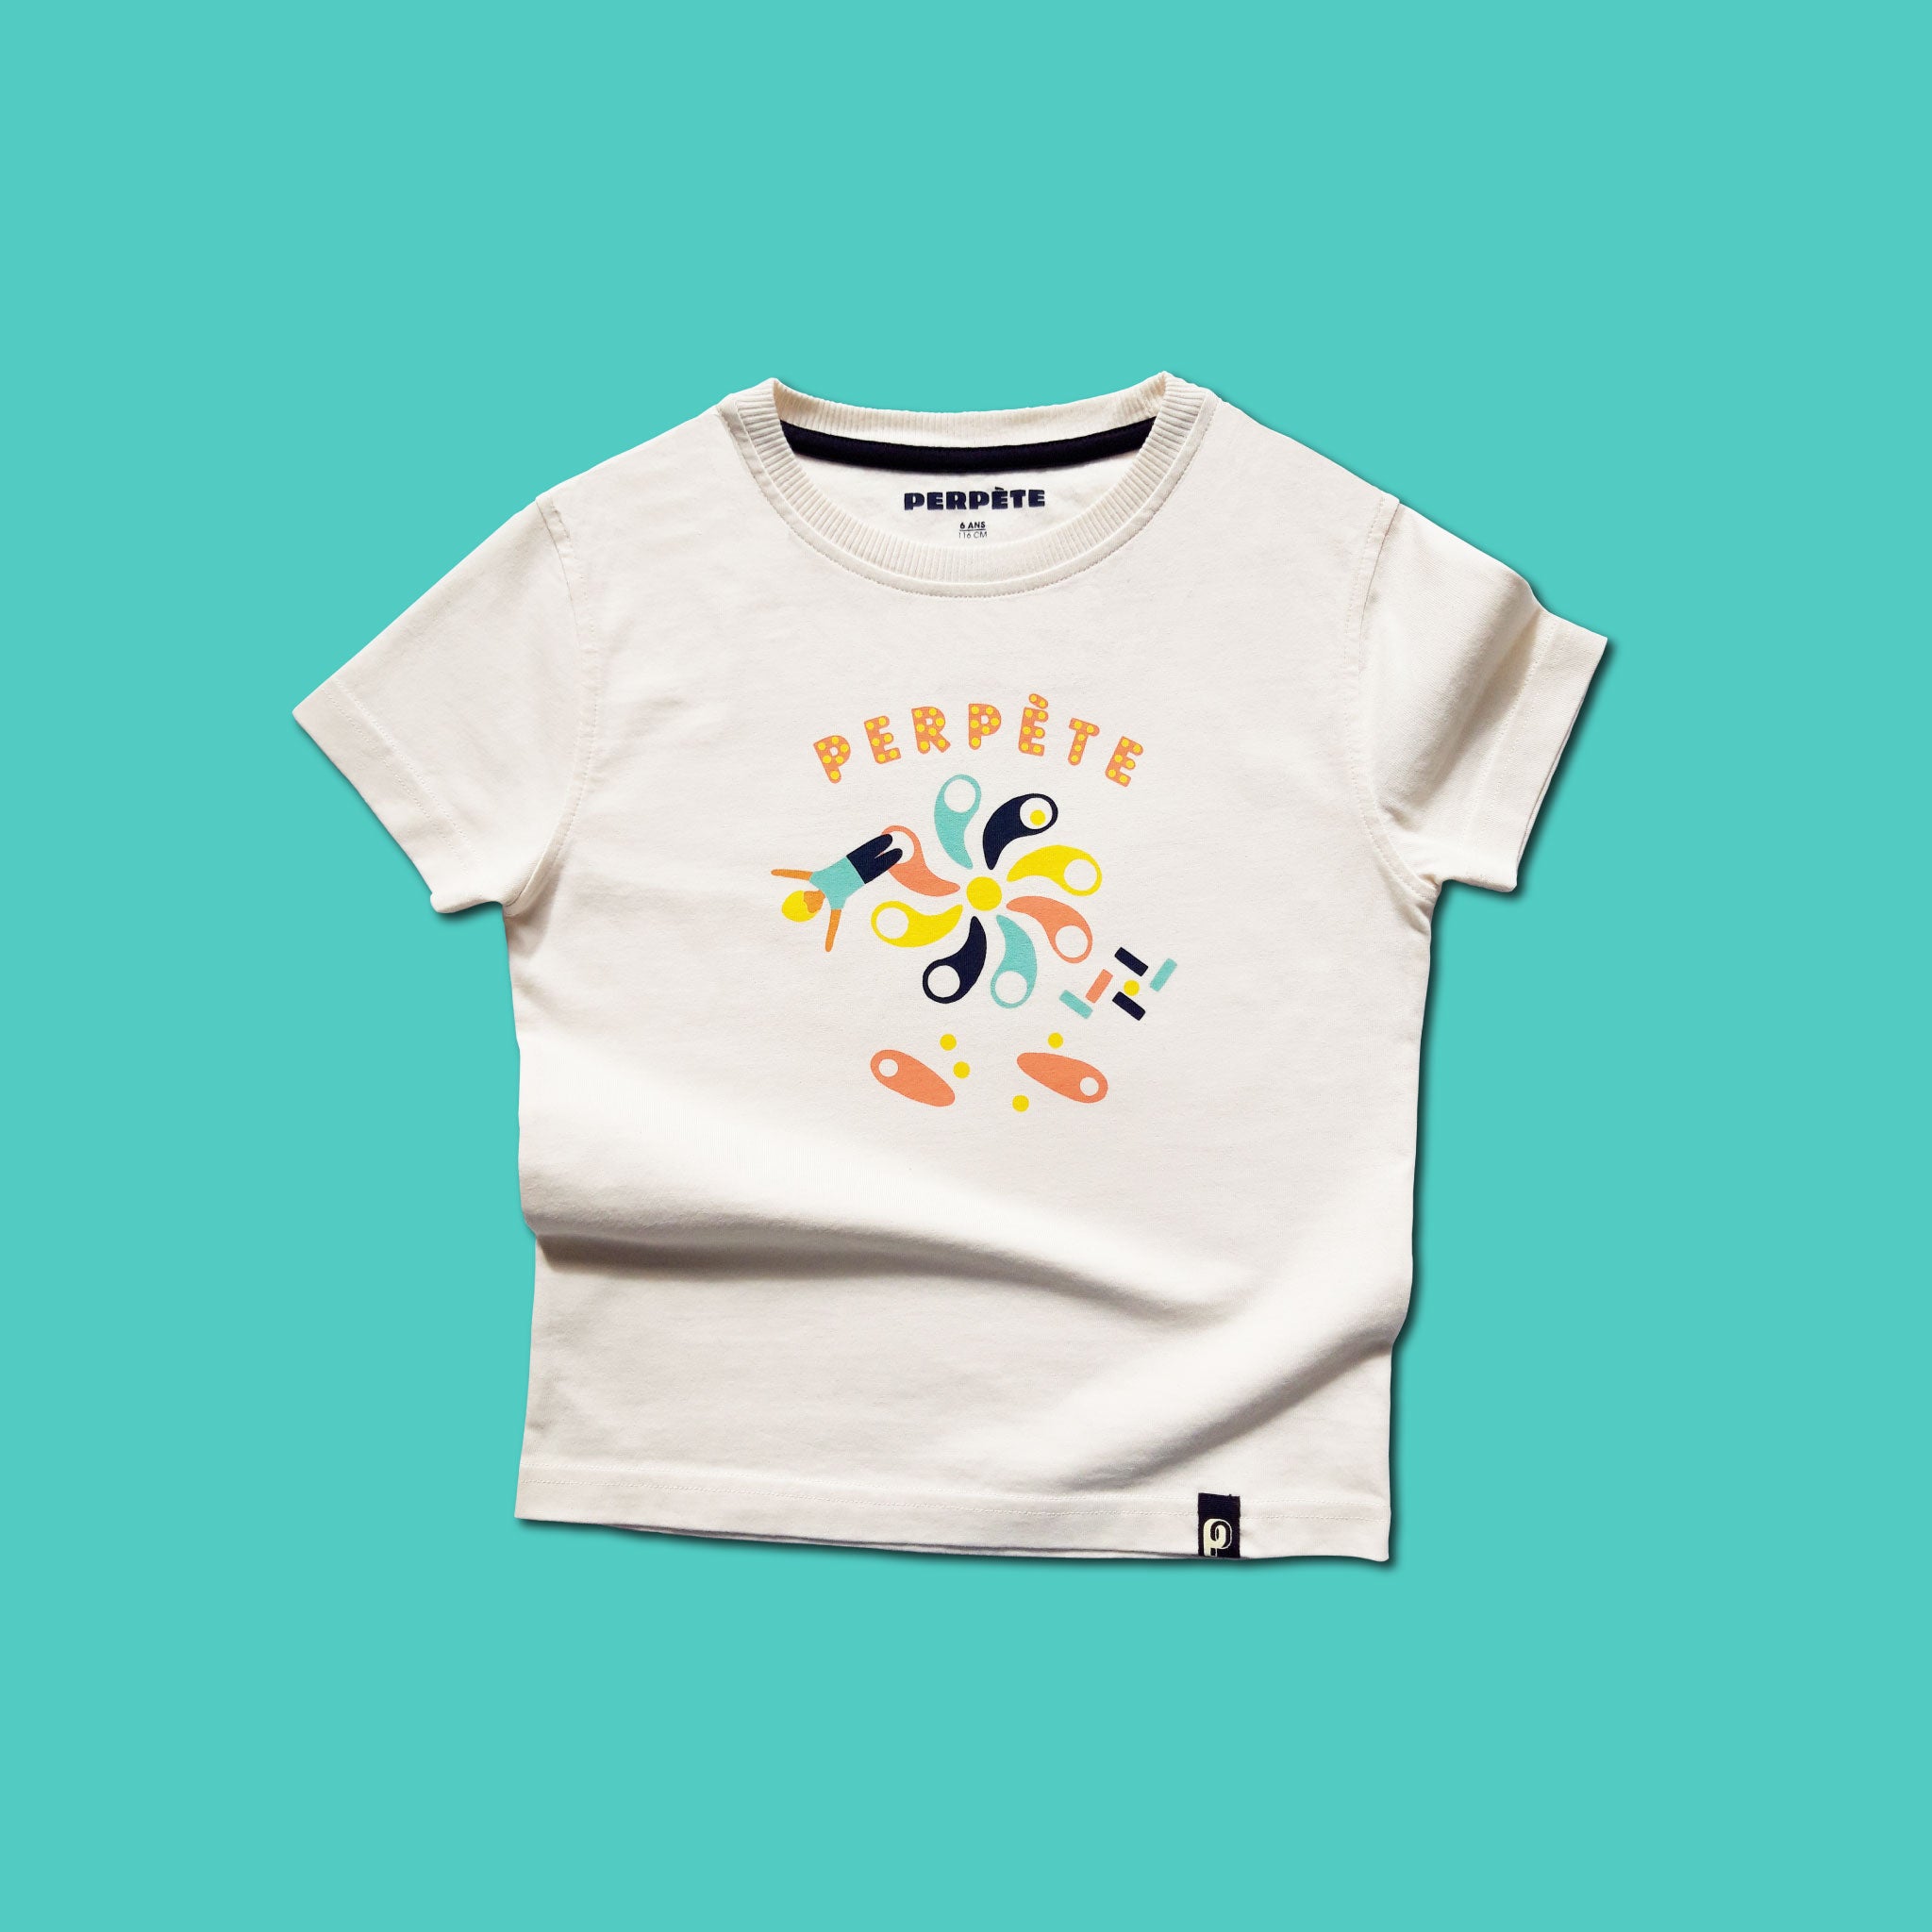 Tee-shirt Perpète game enfant, en coton bio, mixte, coloris crème avec motif sérigraphié coloré Perpète, à plat